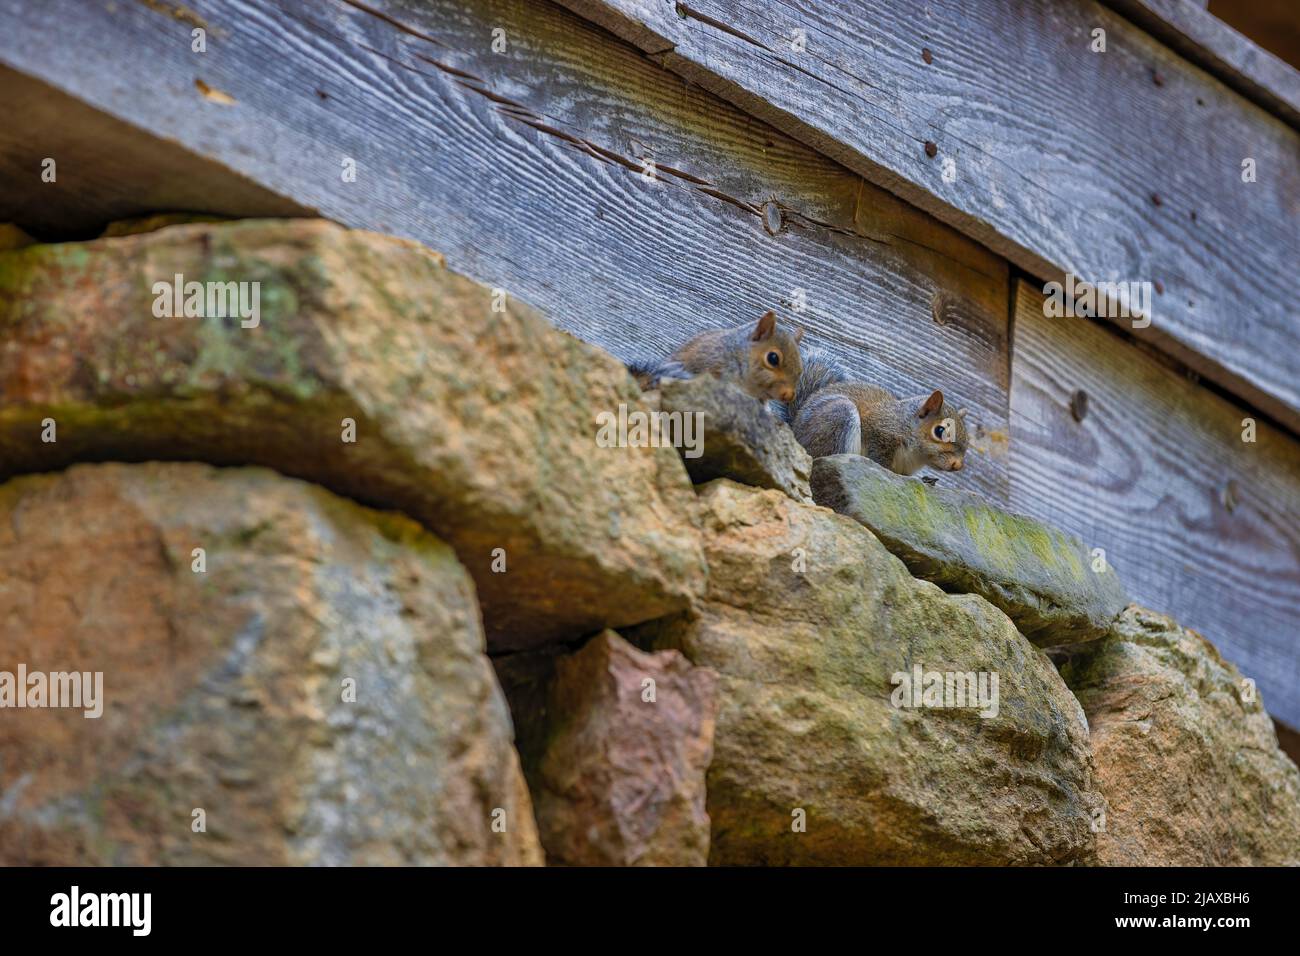 Zwei Eichhörnchen auf gestapelten Felsen, die das Fundament einer alten Mühle bilden. Stockfoto